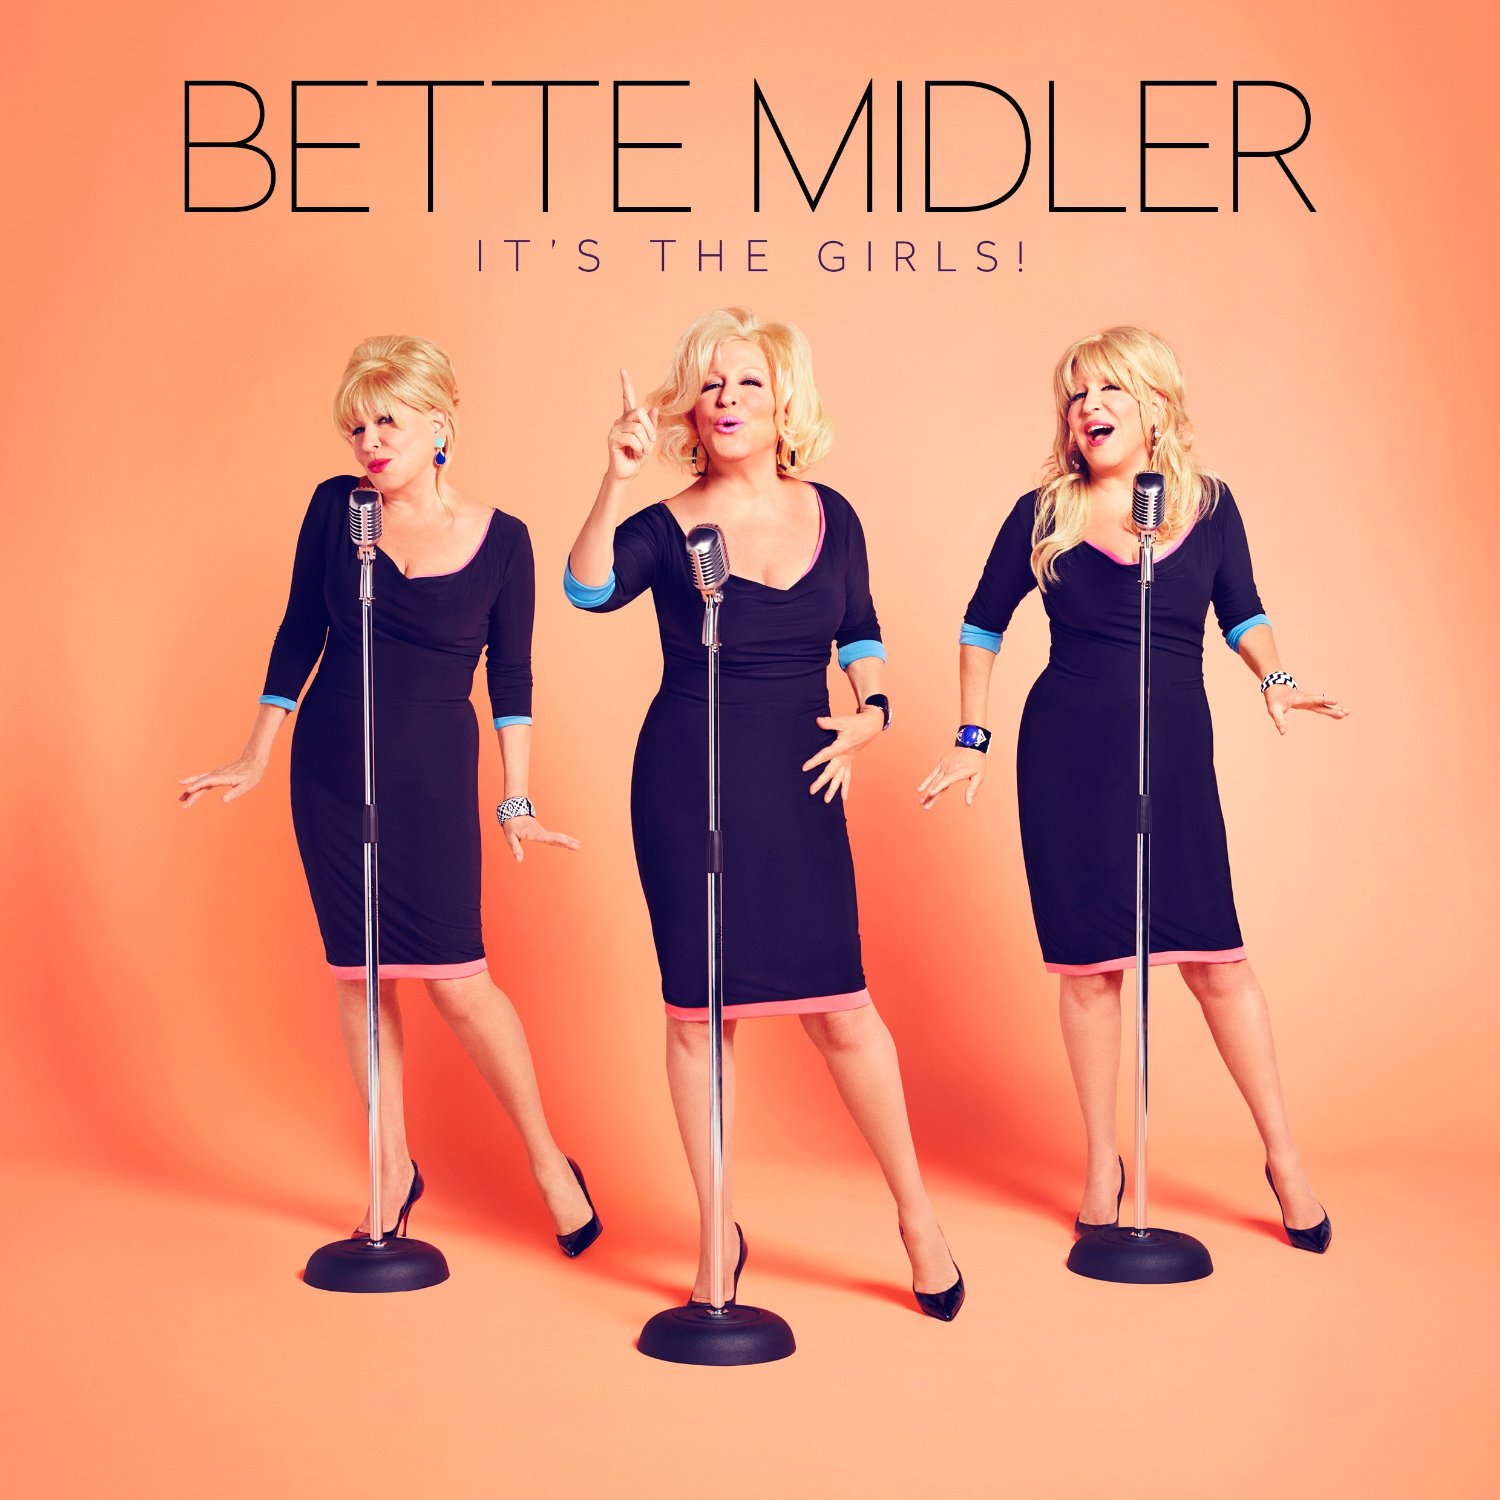  Bette Midler “It’s the Girls”